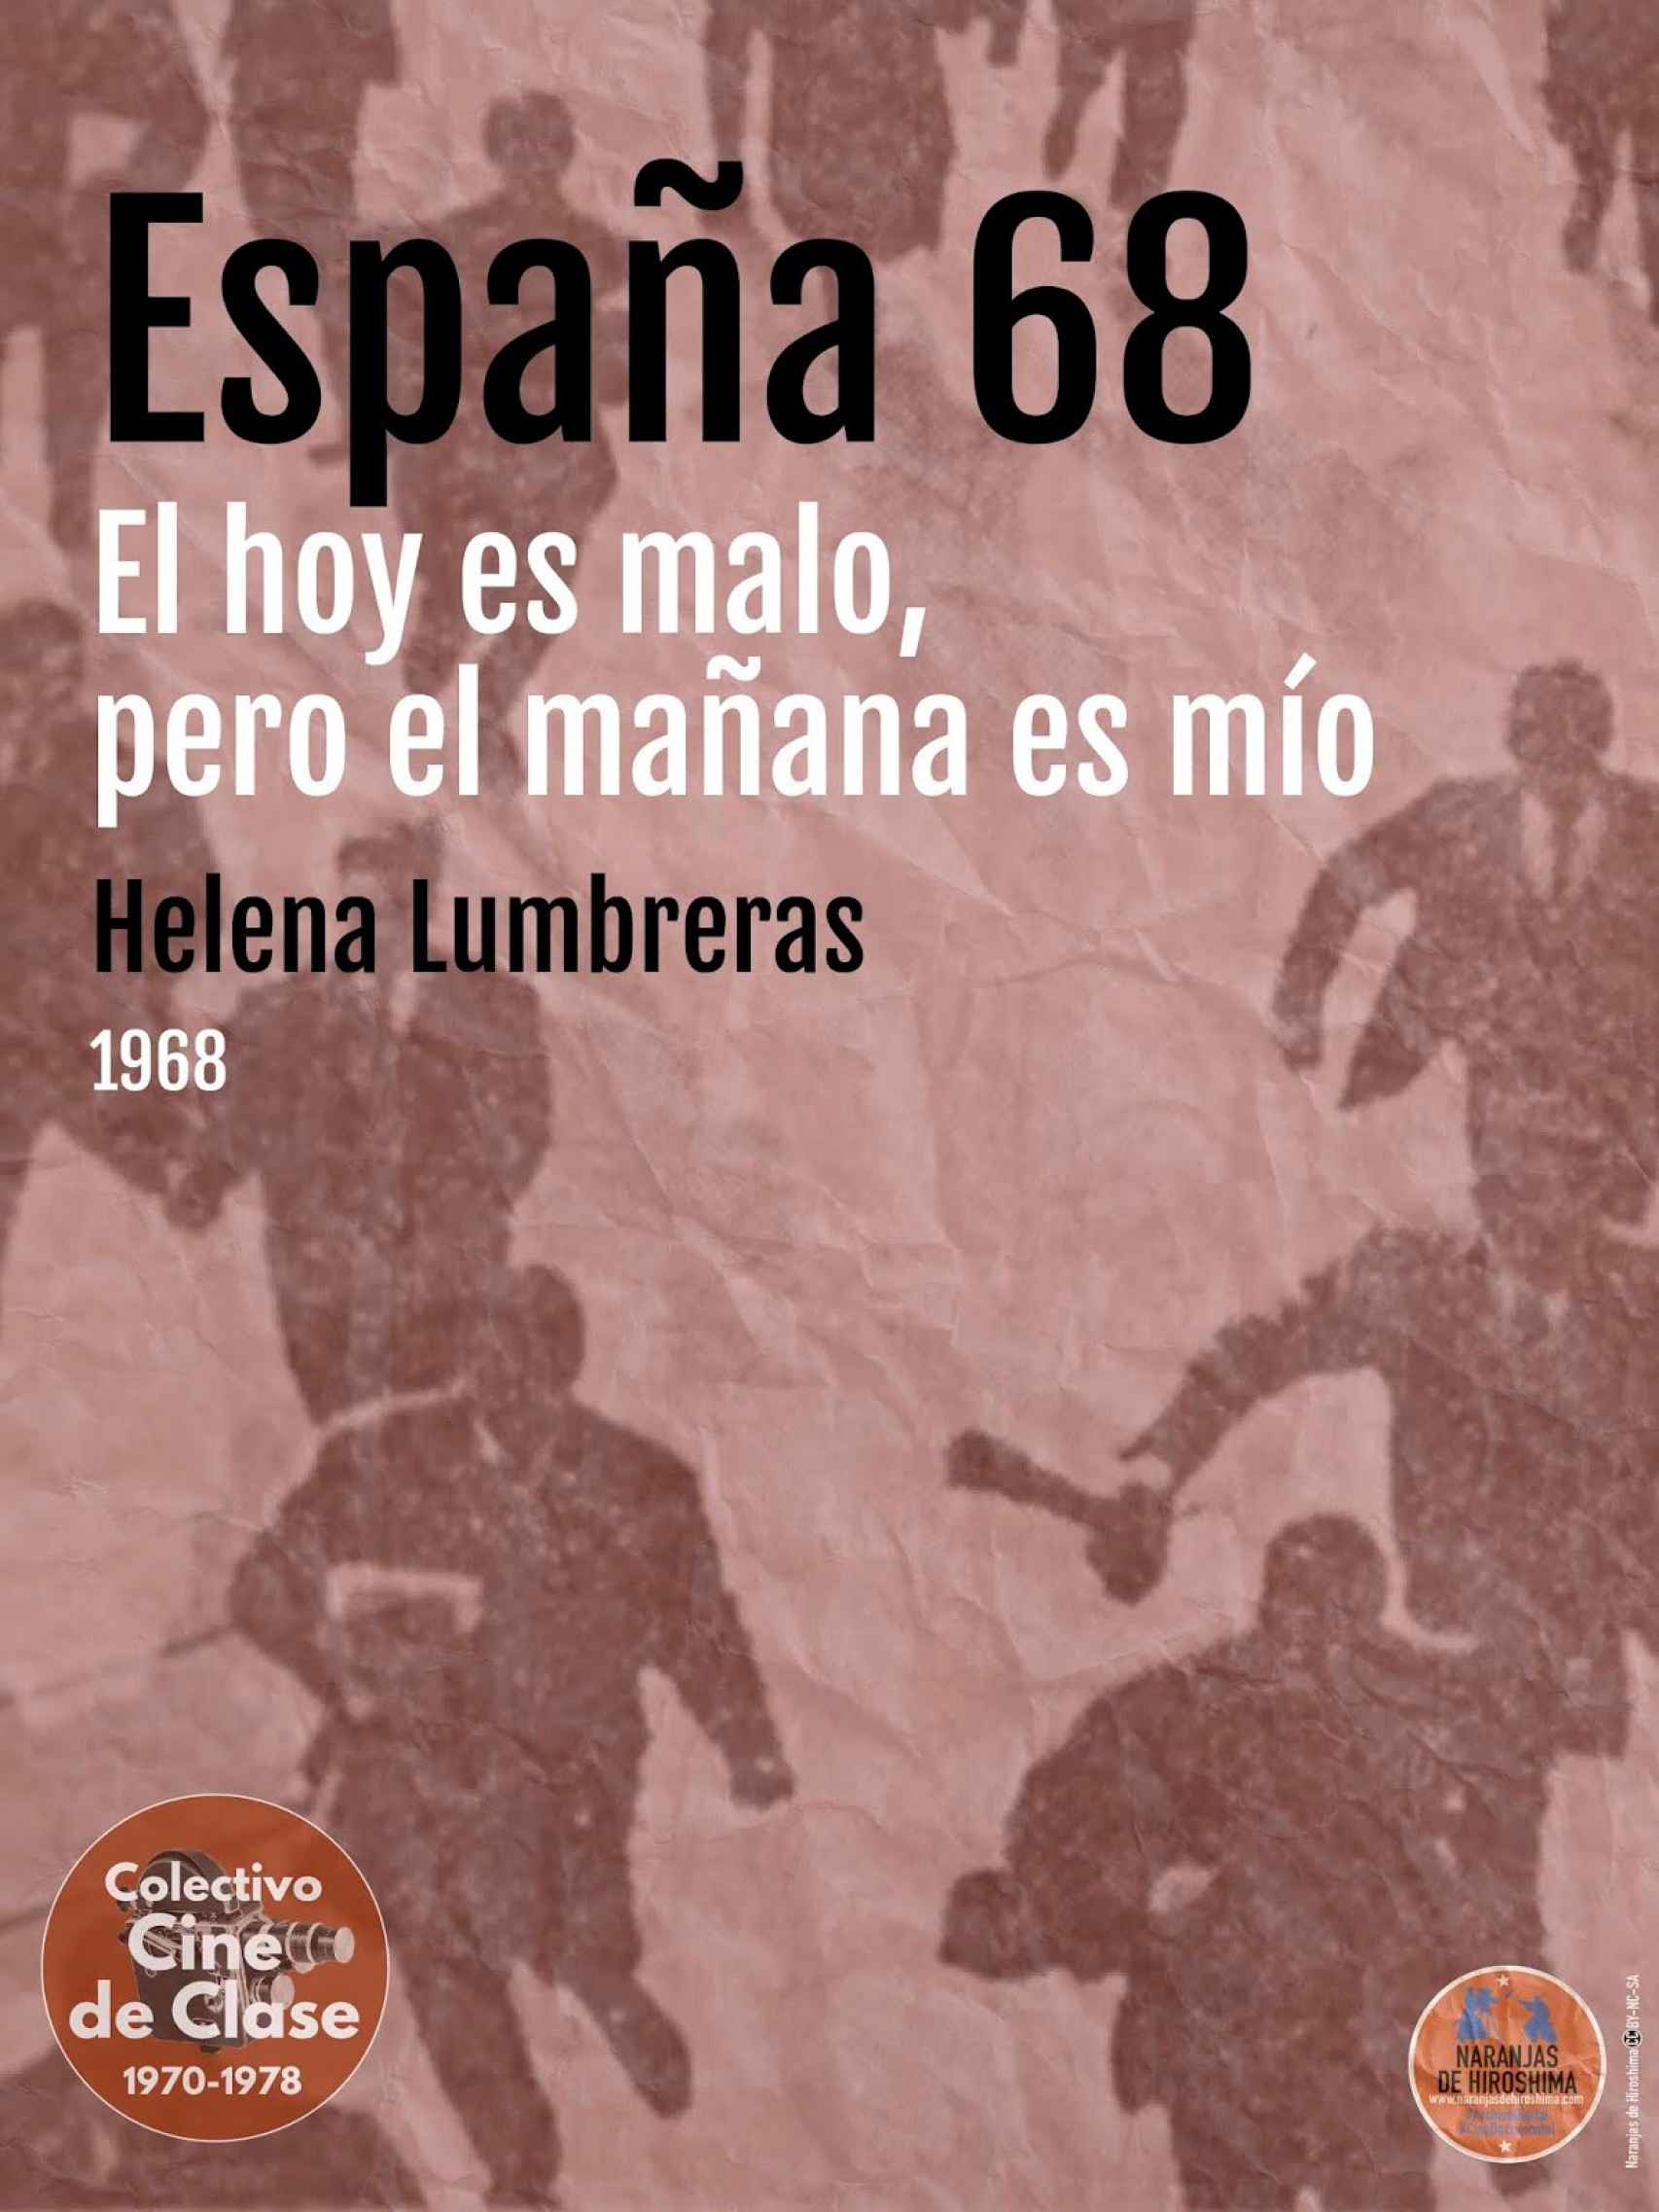 Cartel de la película restaurada 'España 68 (El hoy es malo pero el mañana es mío)', dirigida por Helena Lumbreras